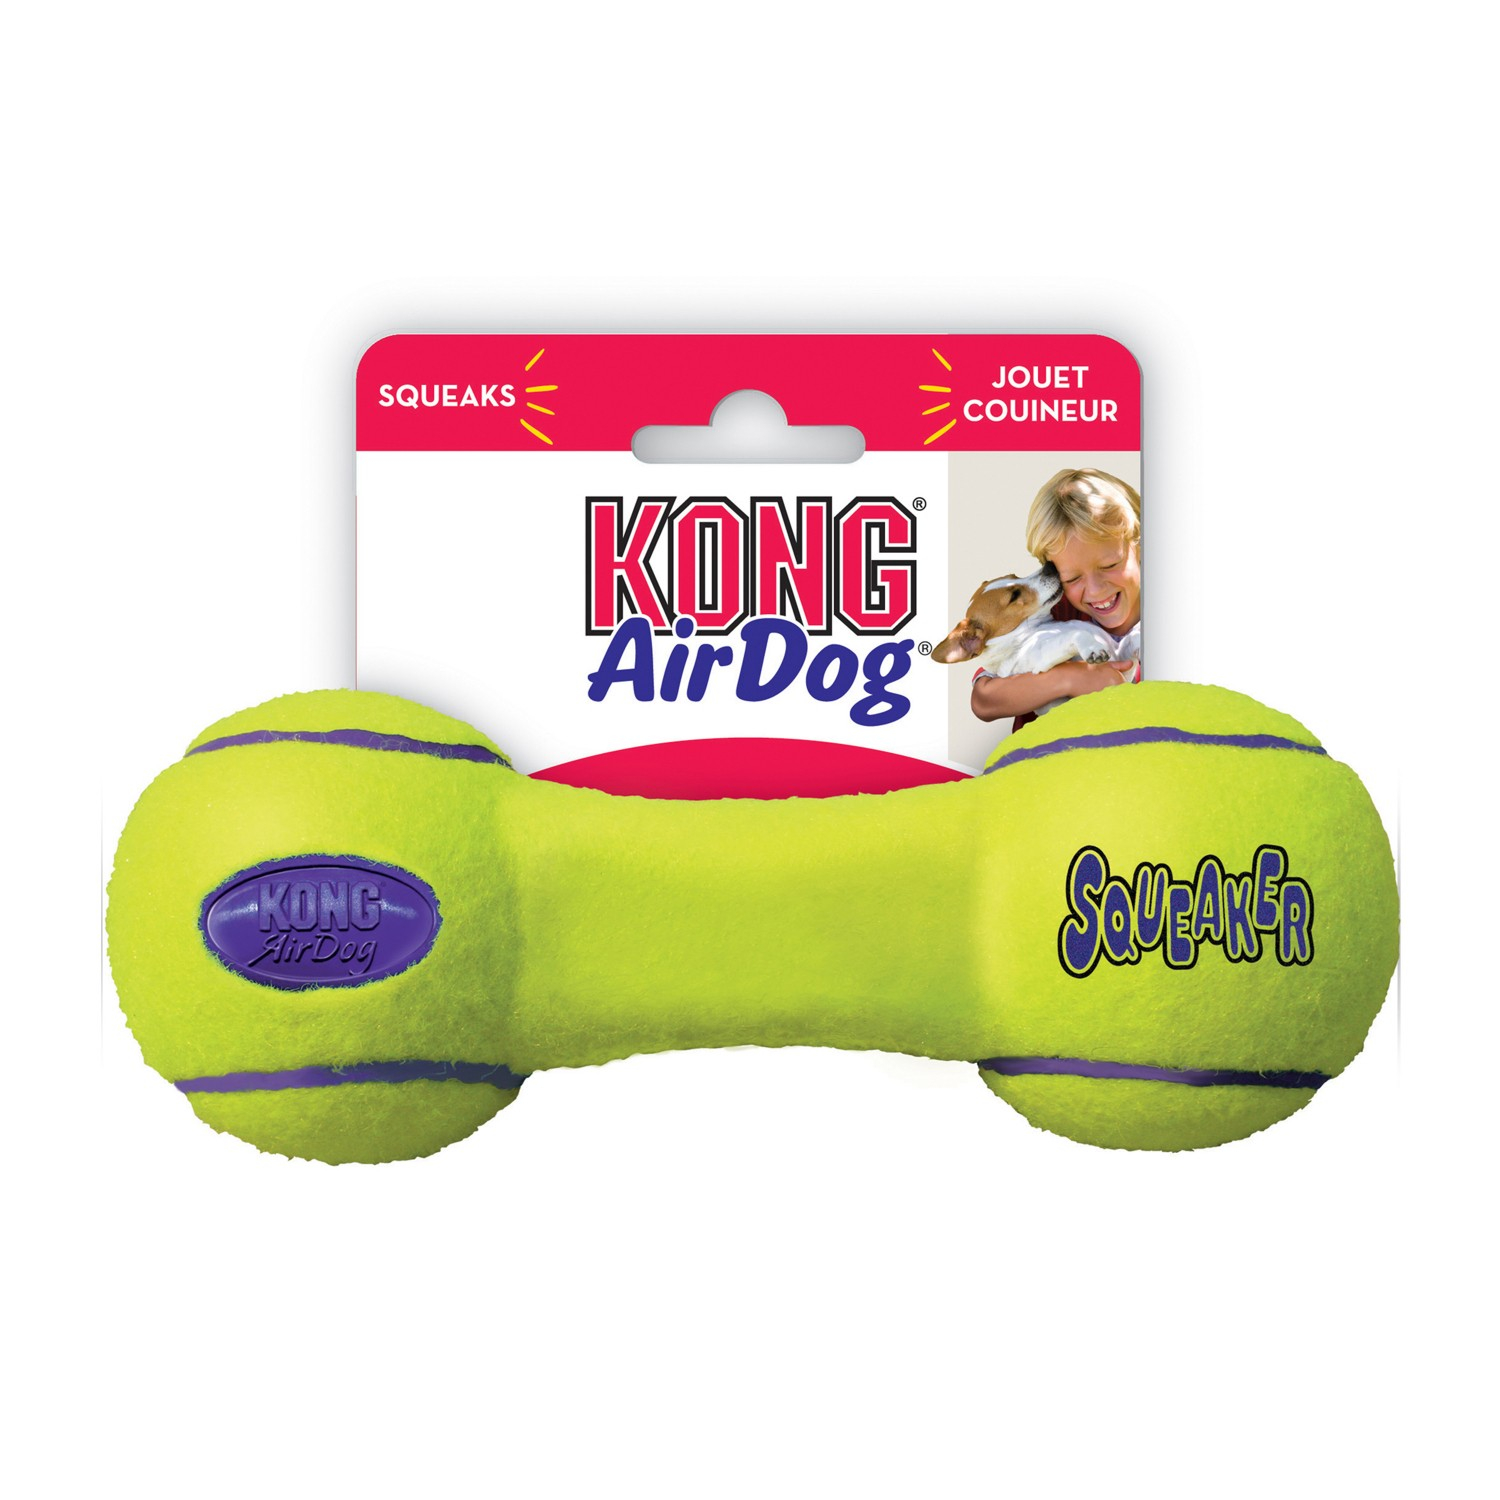 KONG Squeaker Dumbbell 3 taglie - giocattolo cane tutte le taglie - con rimbalzo e suono